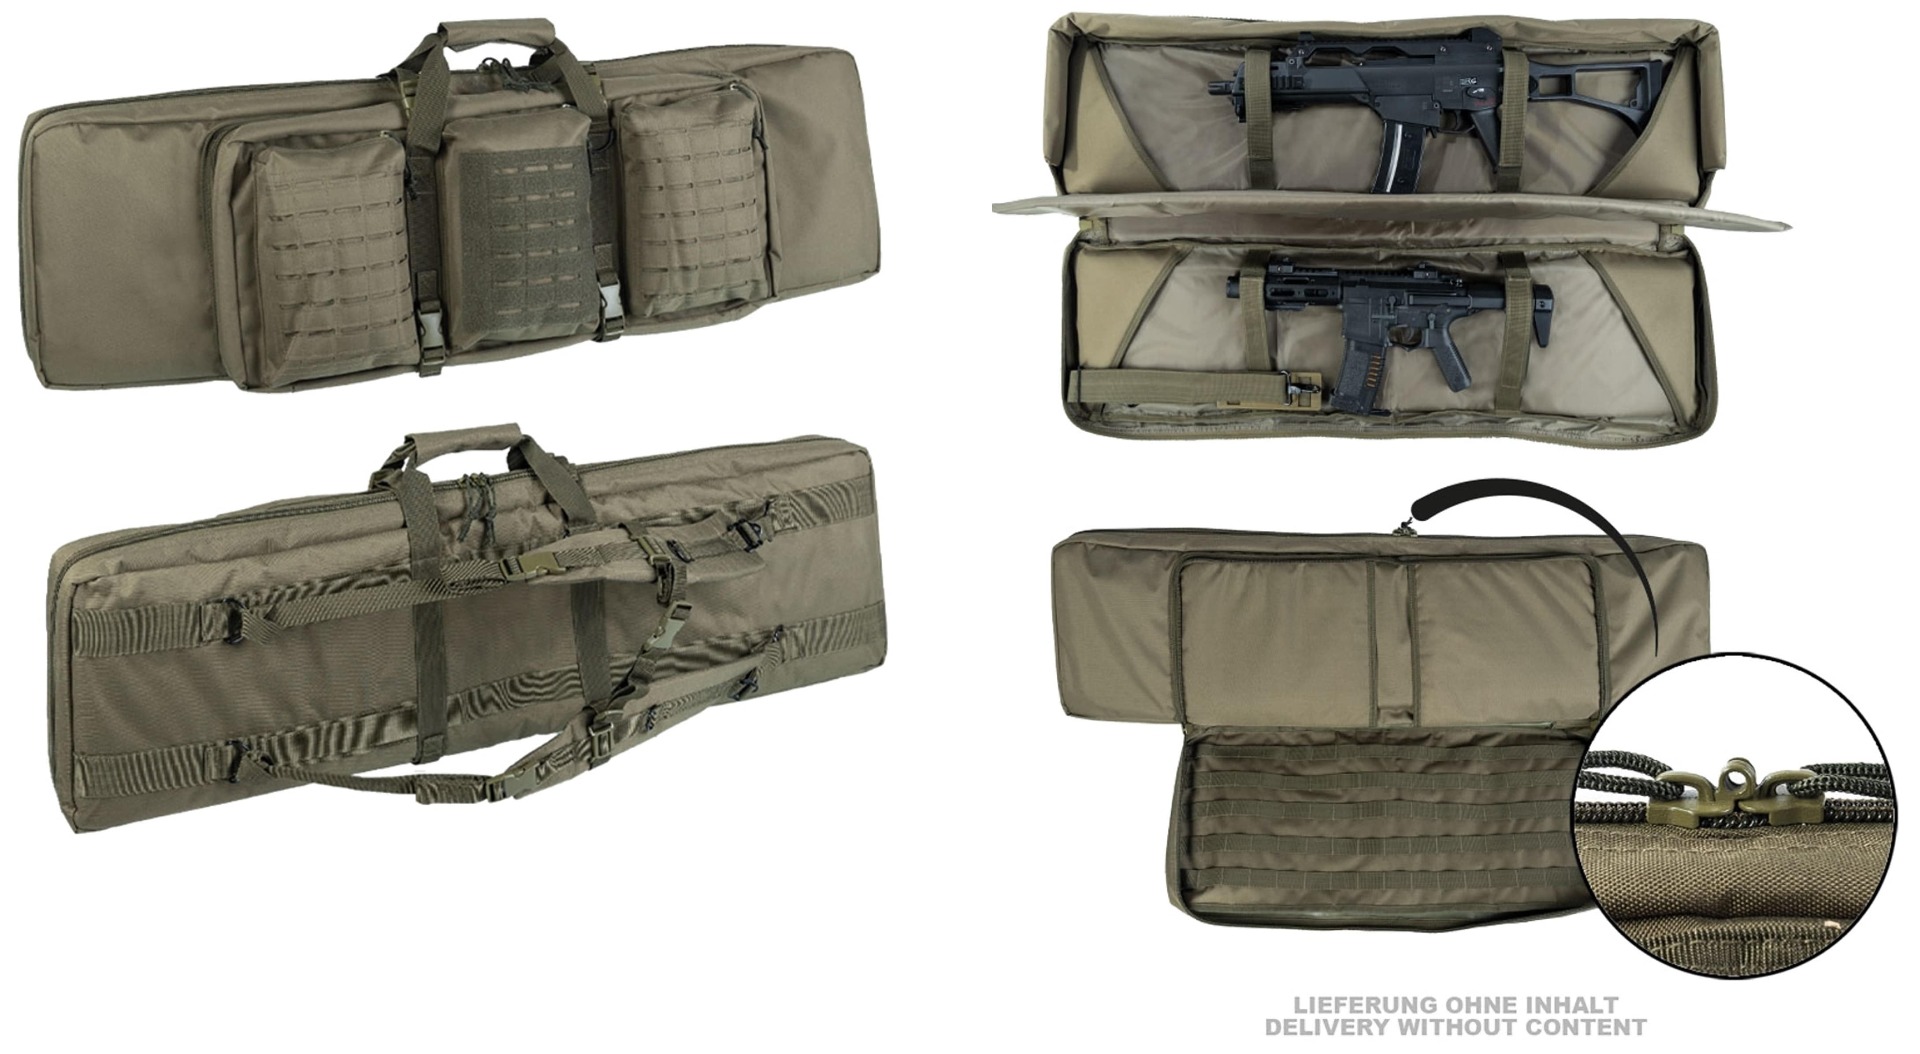 Iščete vrhunsko vojaško strelsko torbo za dve dolgocevni puški in dve pištoli? Priskrbite si najboljšo torbo za varno in udobno prenašanje vaše opreme. Idealna za vojaške navdušence, lovce in strelce.